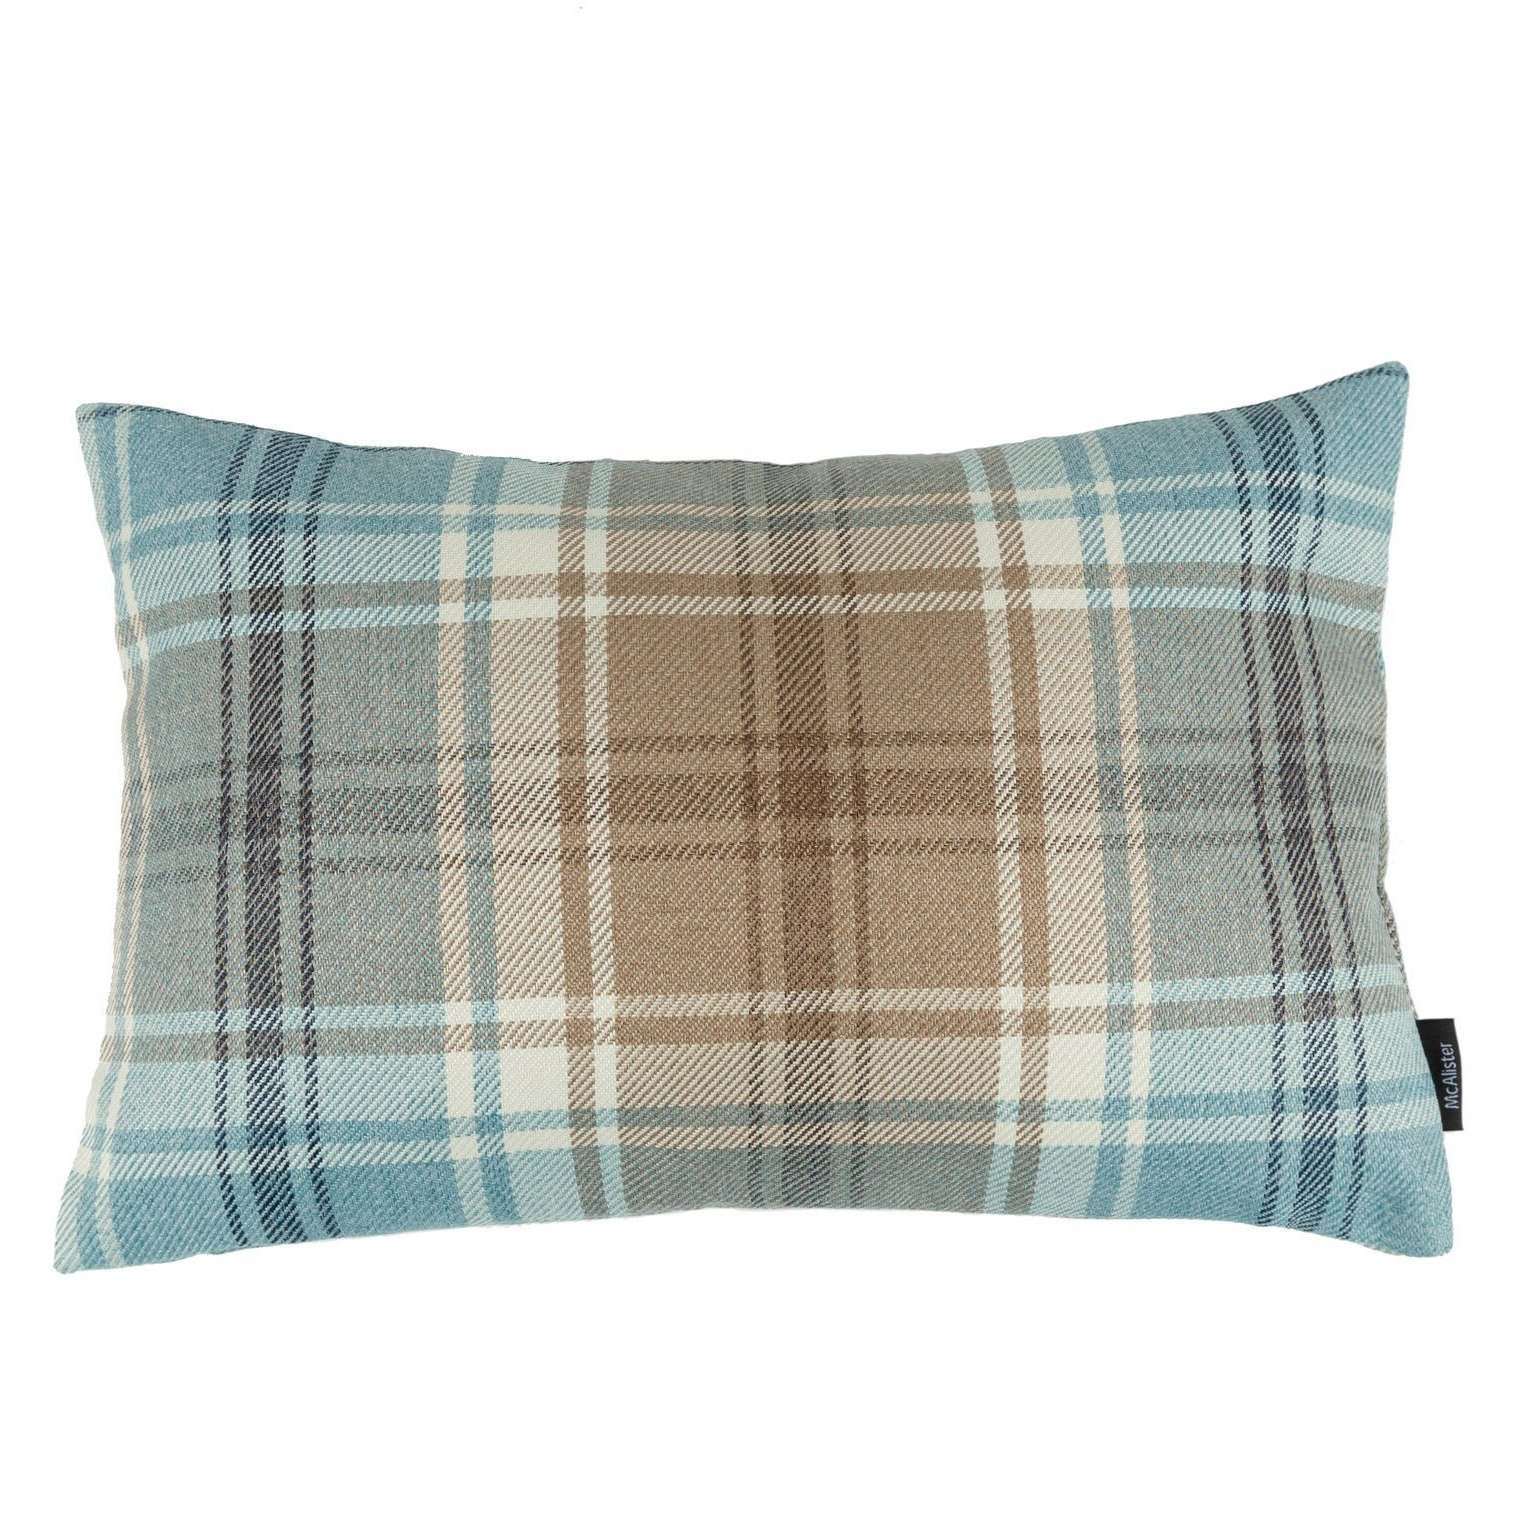 McAlister Textiles Angus Duck Egg Blue Tartan Pillow Pillow Cover Only 50cm x 30cm 